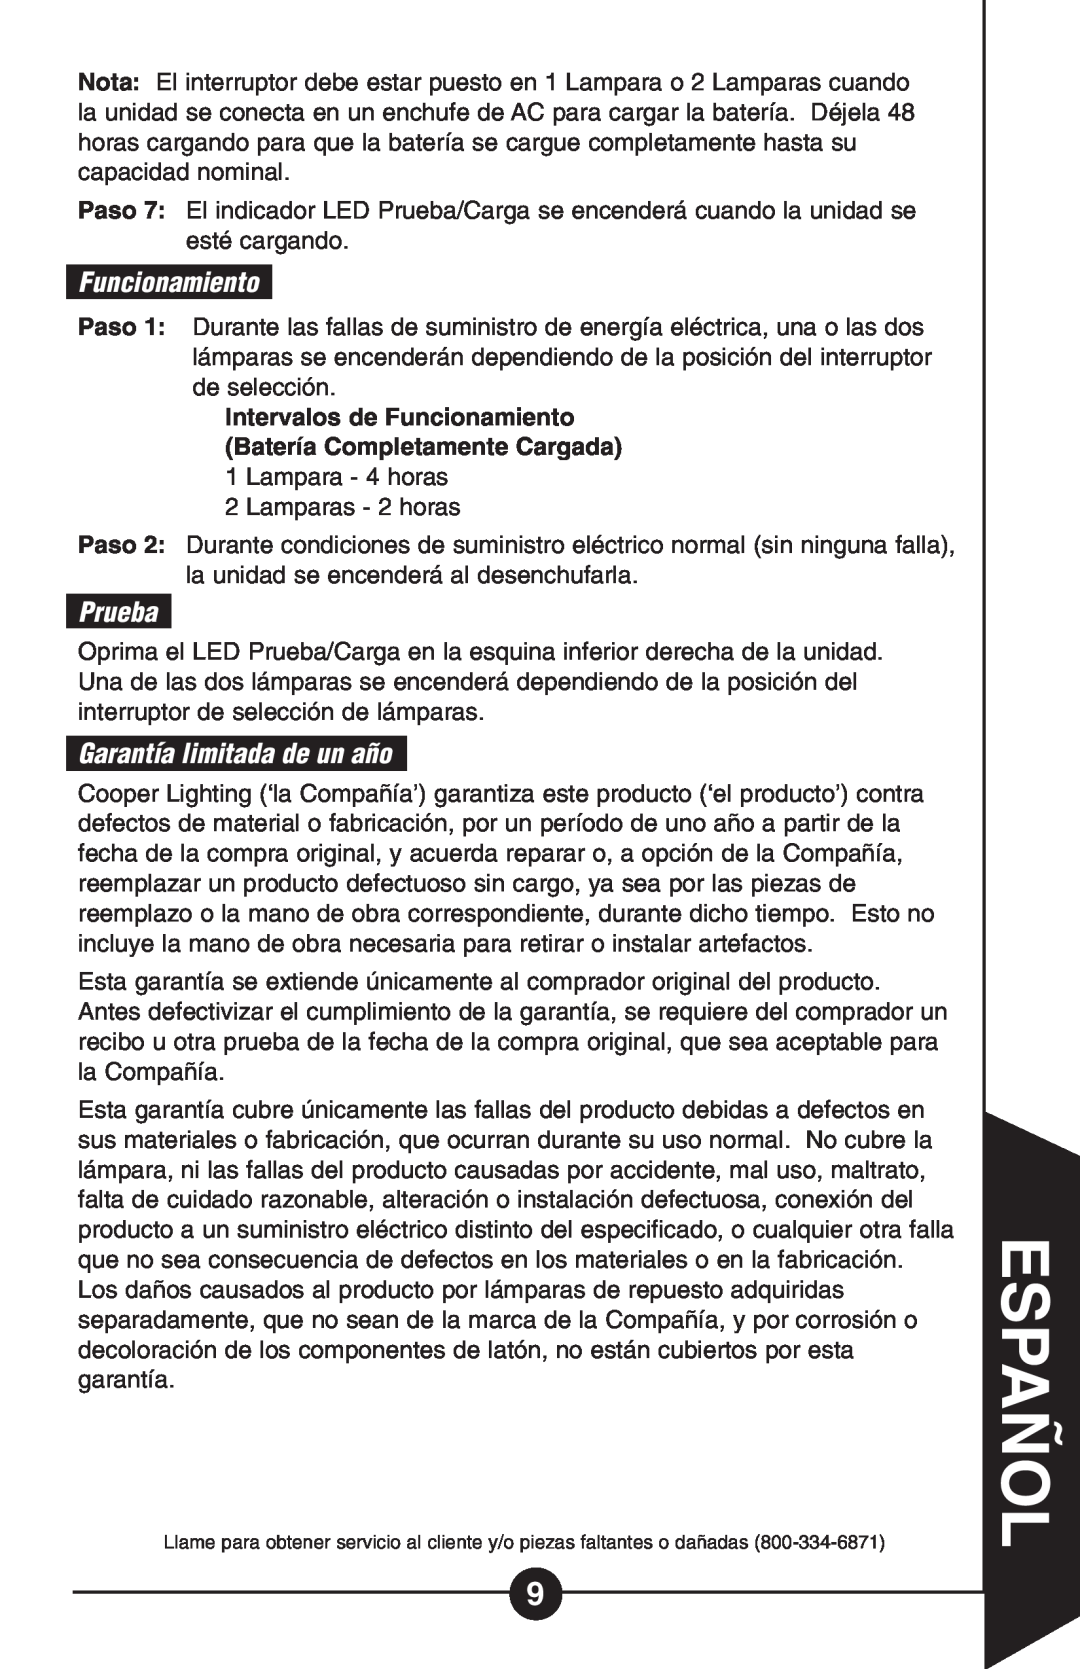 Cooper Lighting Hs 1r, HS1R-C instruction manual Funcionamiento, Prueba, Garantía limitada de un año, Español 